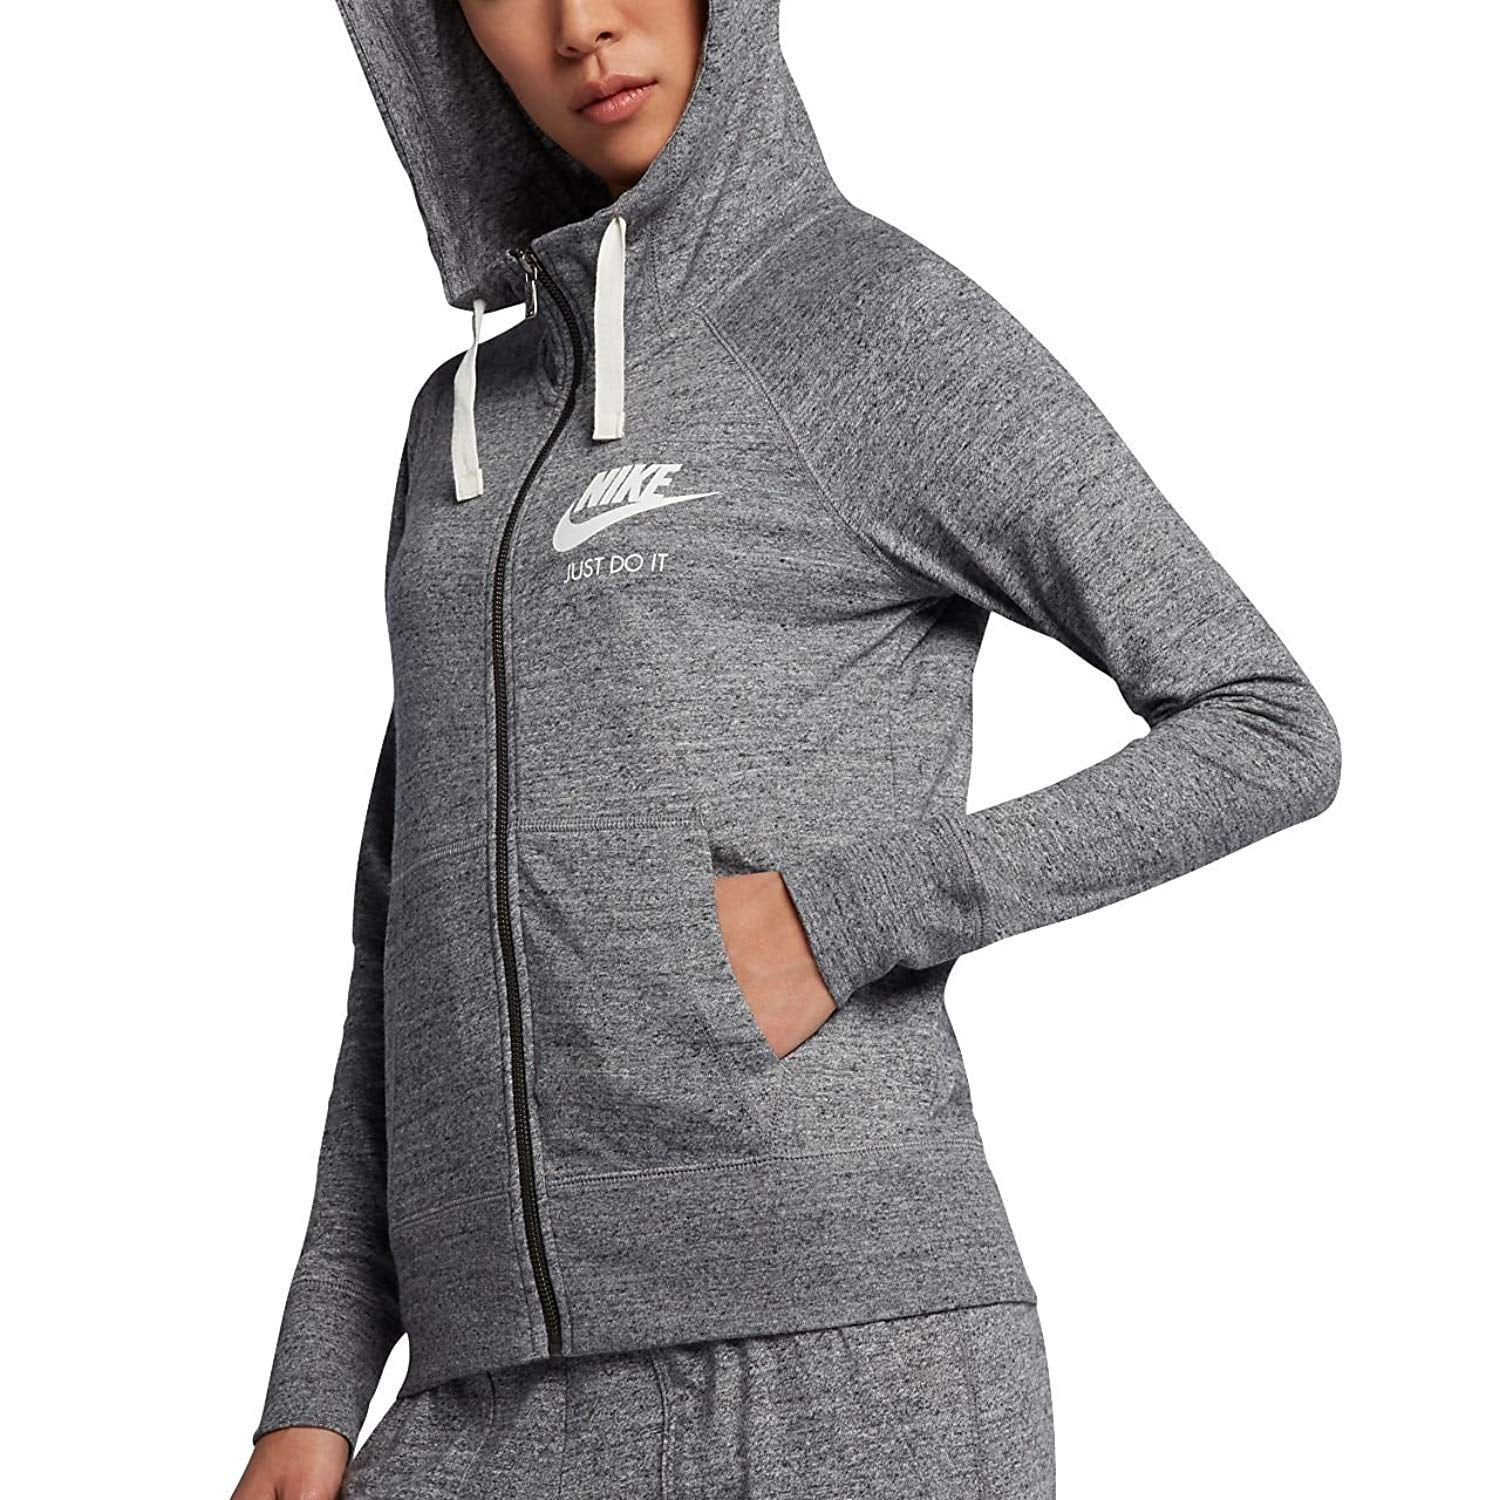 grey nike hoodie womens zip up